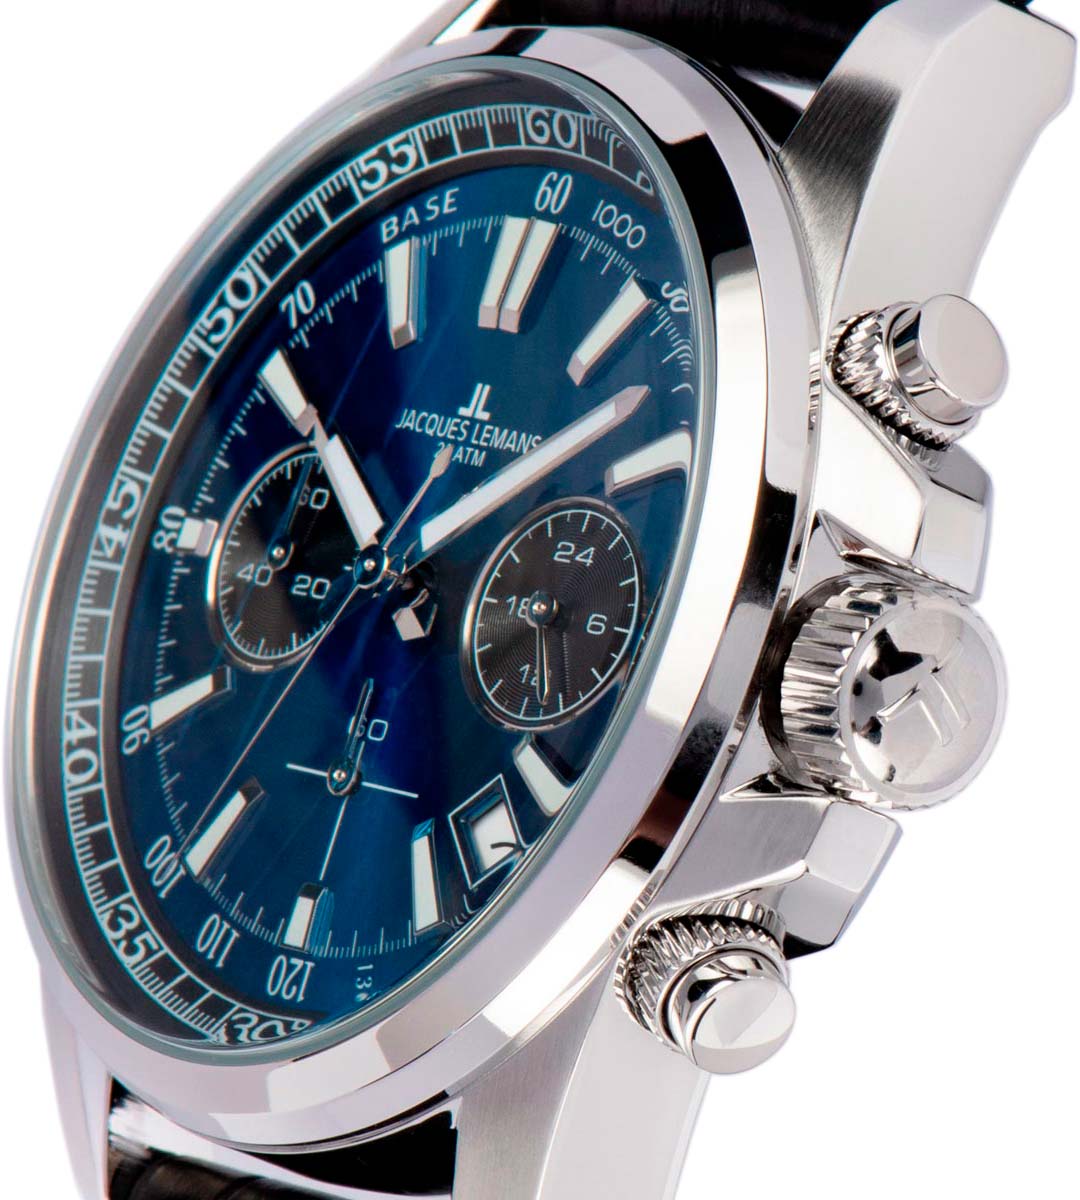 Наручные часы Jacques фото, — цене, Lemans 1-2117S AllTime.ru интернет-магазине в инструкция, характеристики, по лучшей описание купить